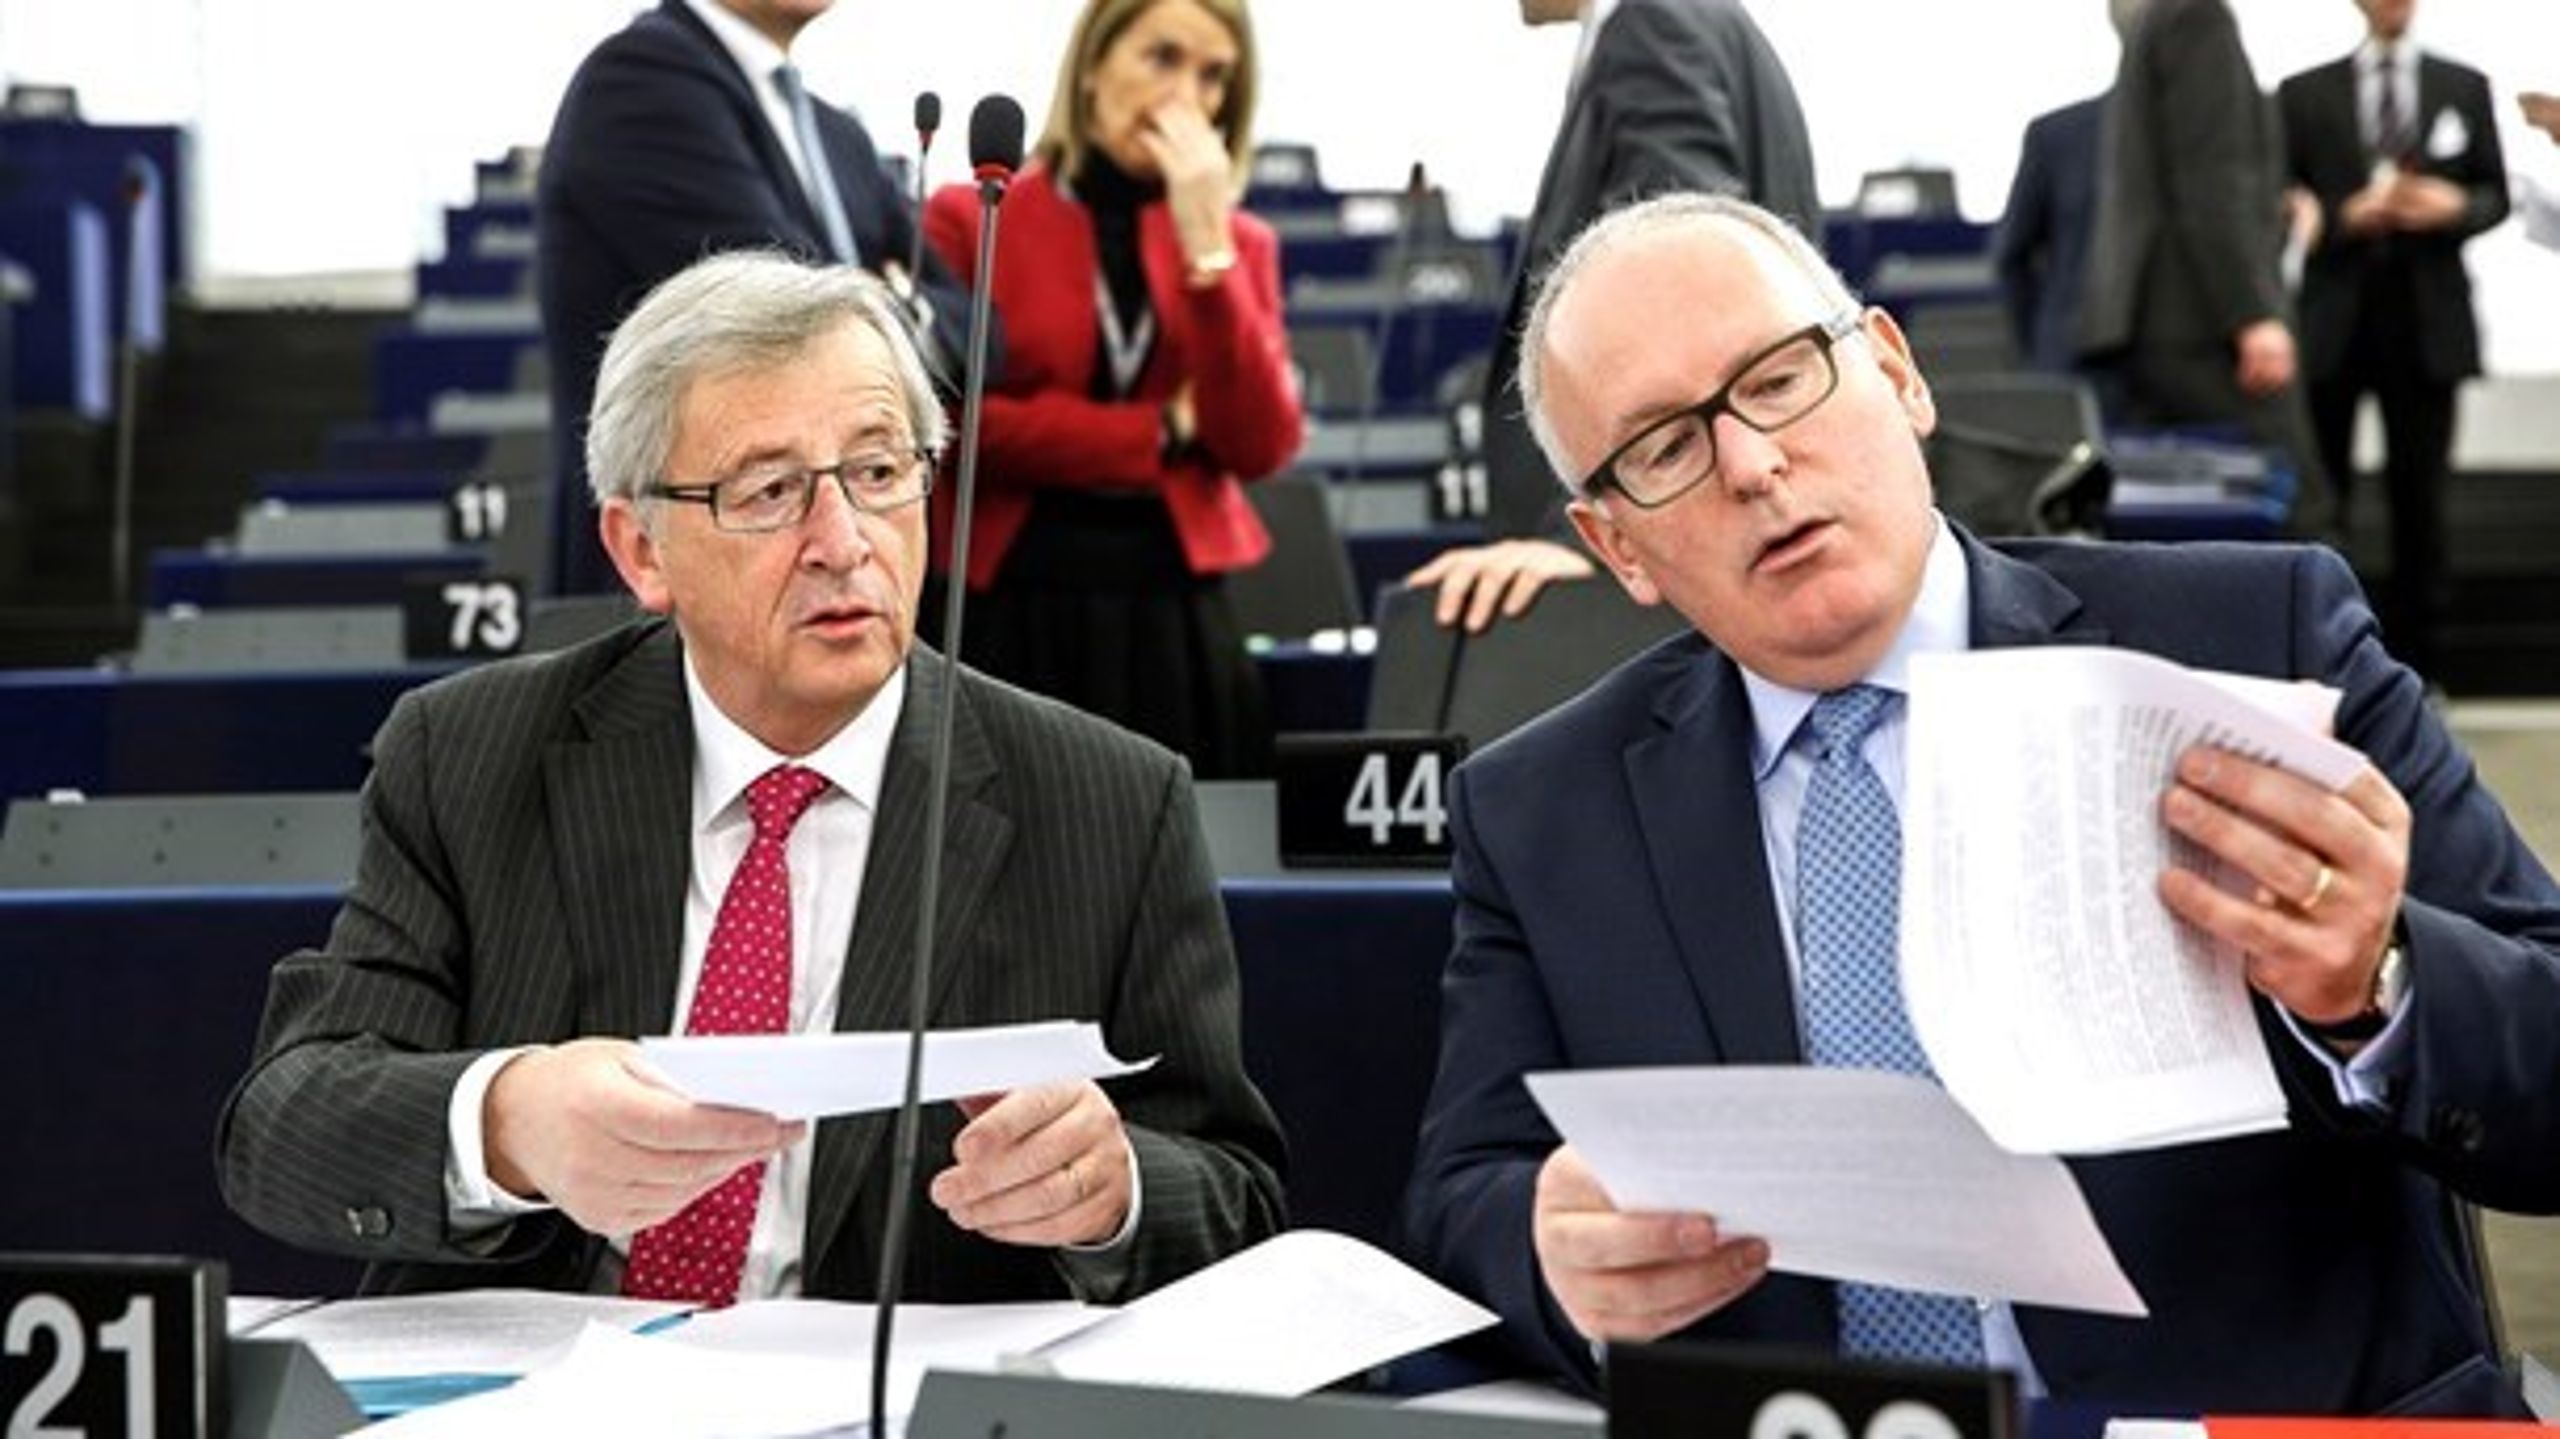 EU-kommissionen ska bland annat fokusera på utsläppskvoter och cirkulär ekonomi nästa år, under ledning av dess&nbsp;ordförande och förste vice ordförande,&nbsp;Jean-Claude Juncker och Frans Timmermans.<br>